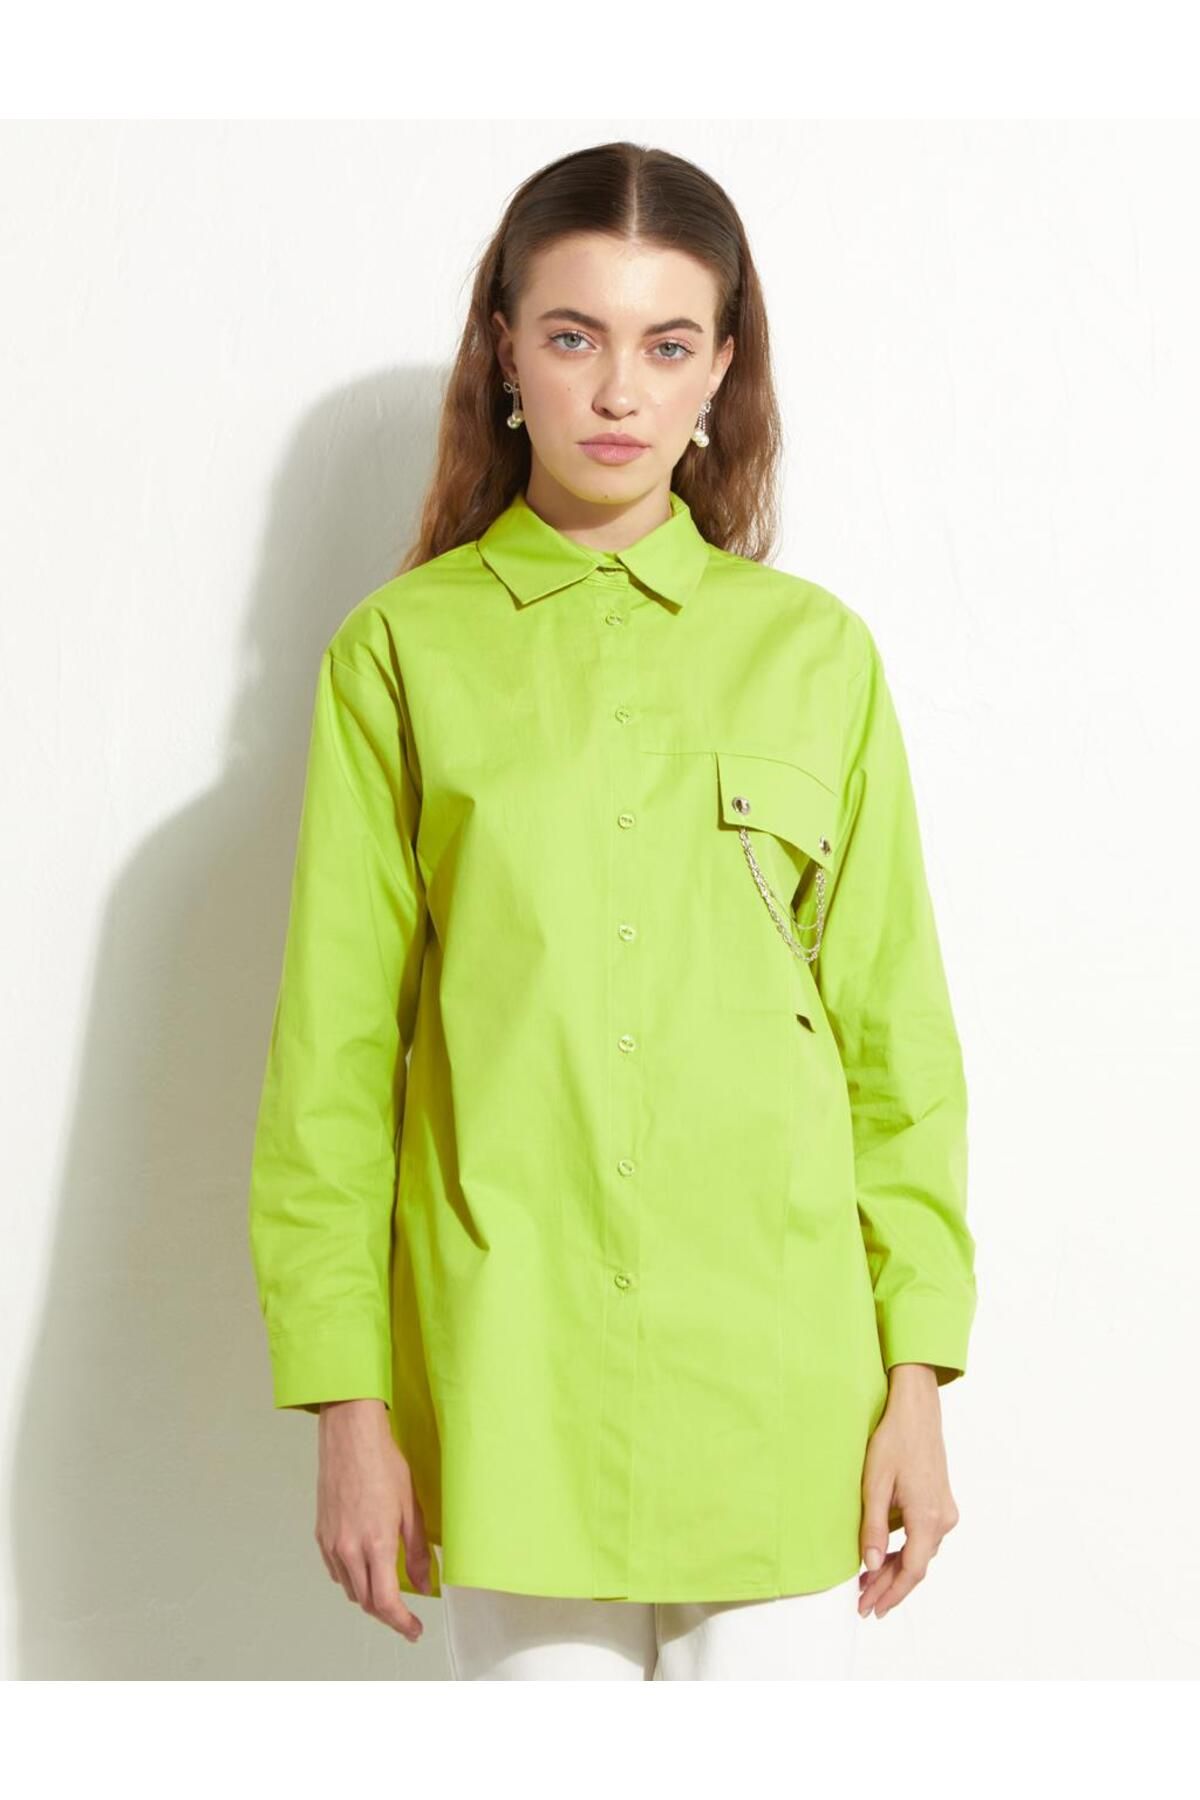 Kayra Zincirli Cep Detaylı Gömlek Fıstık Yeşili